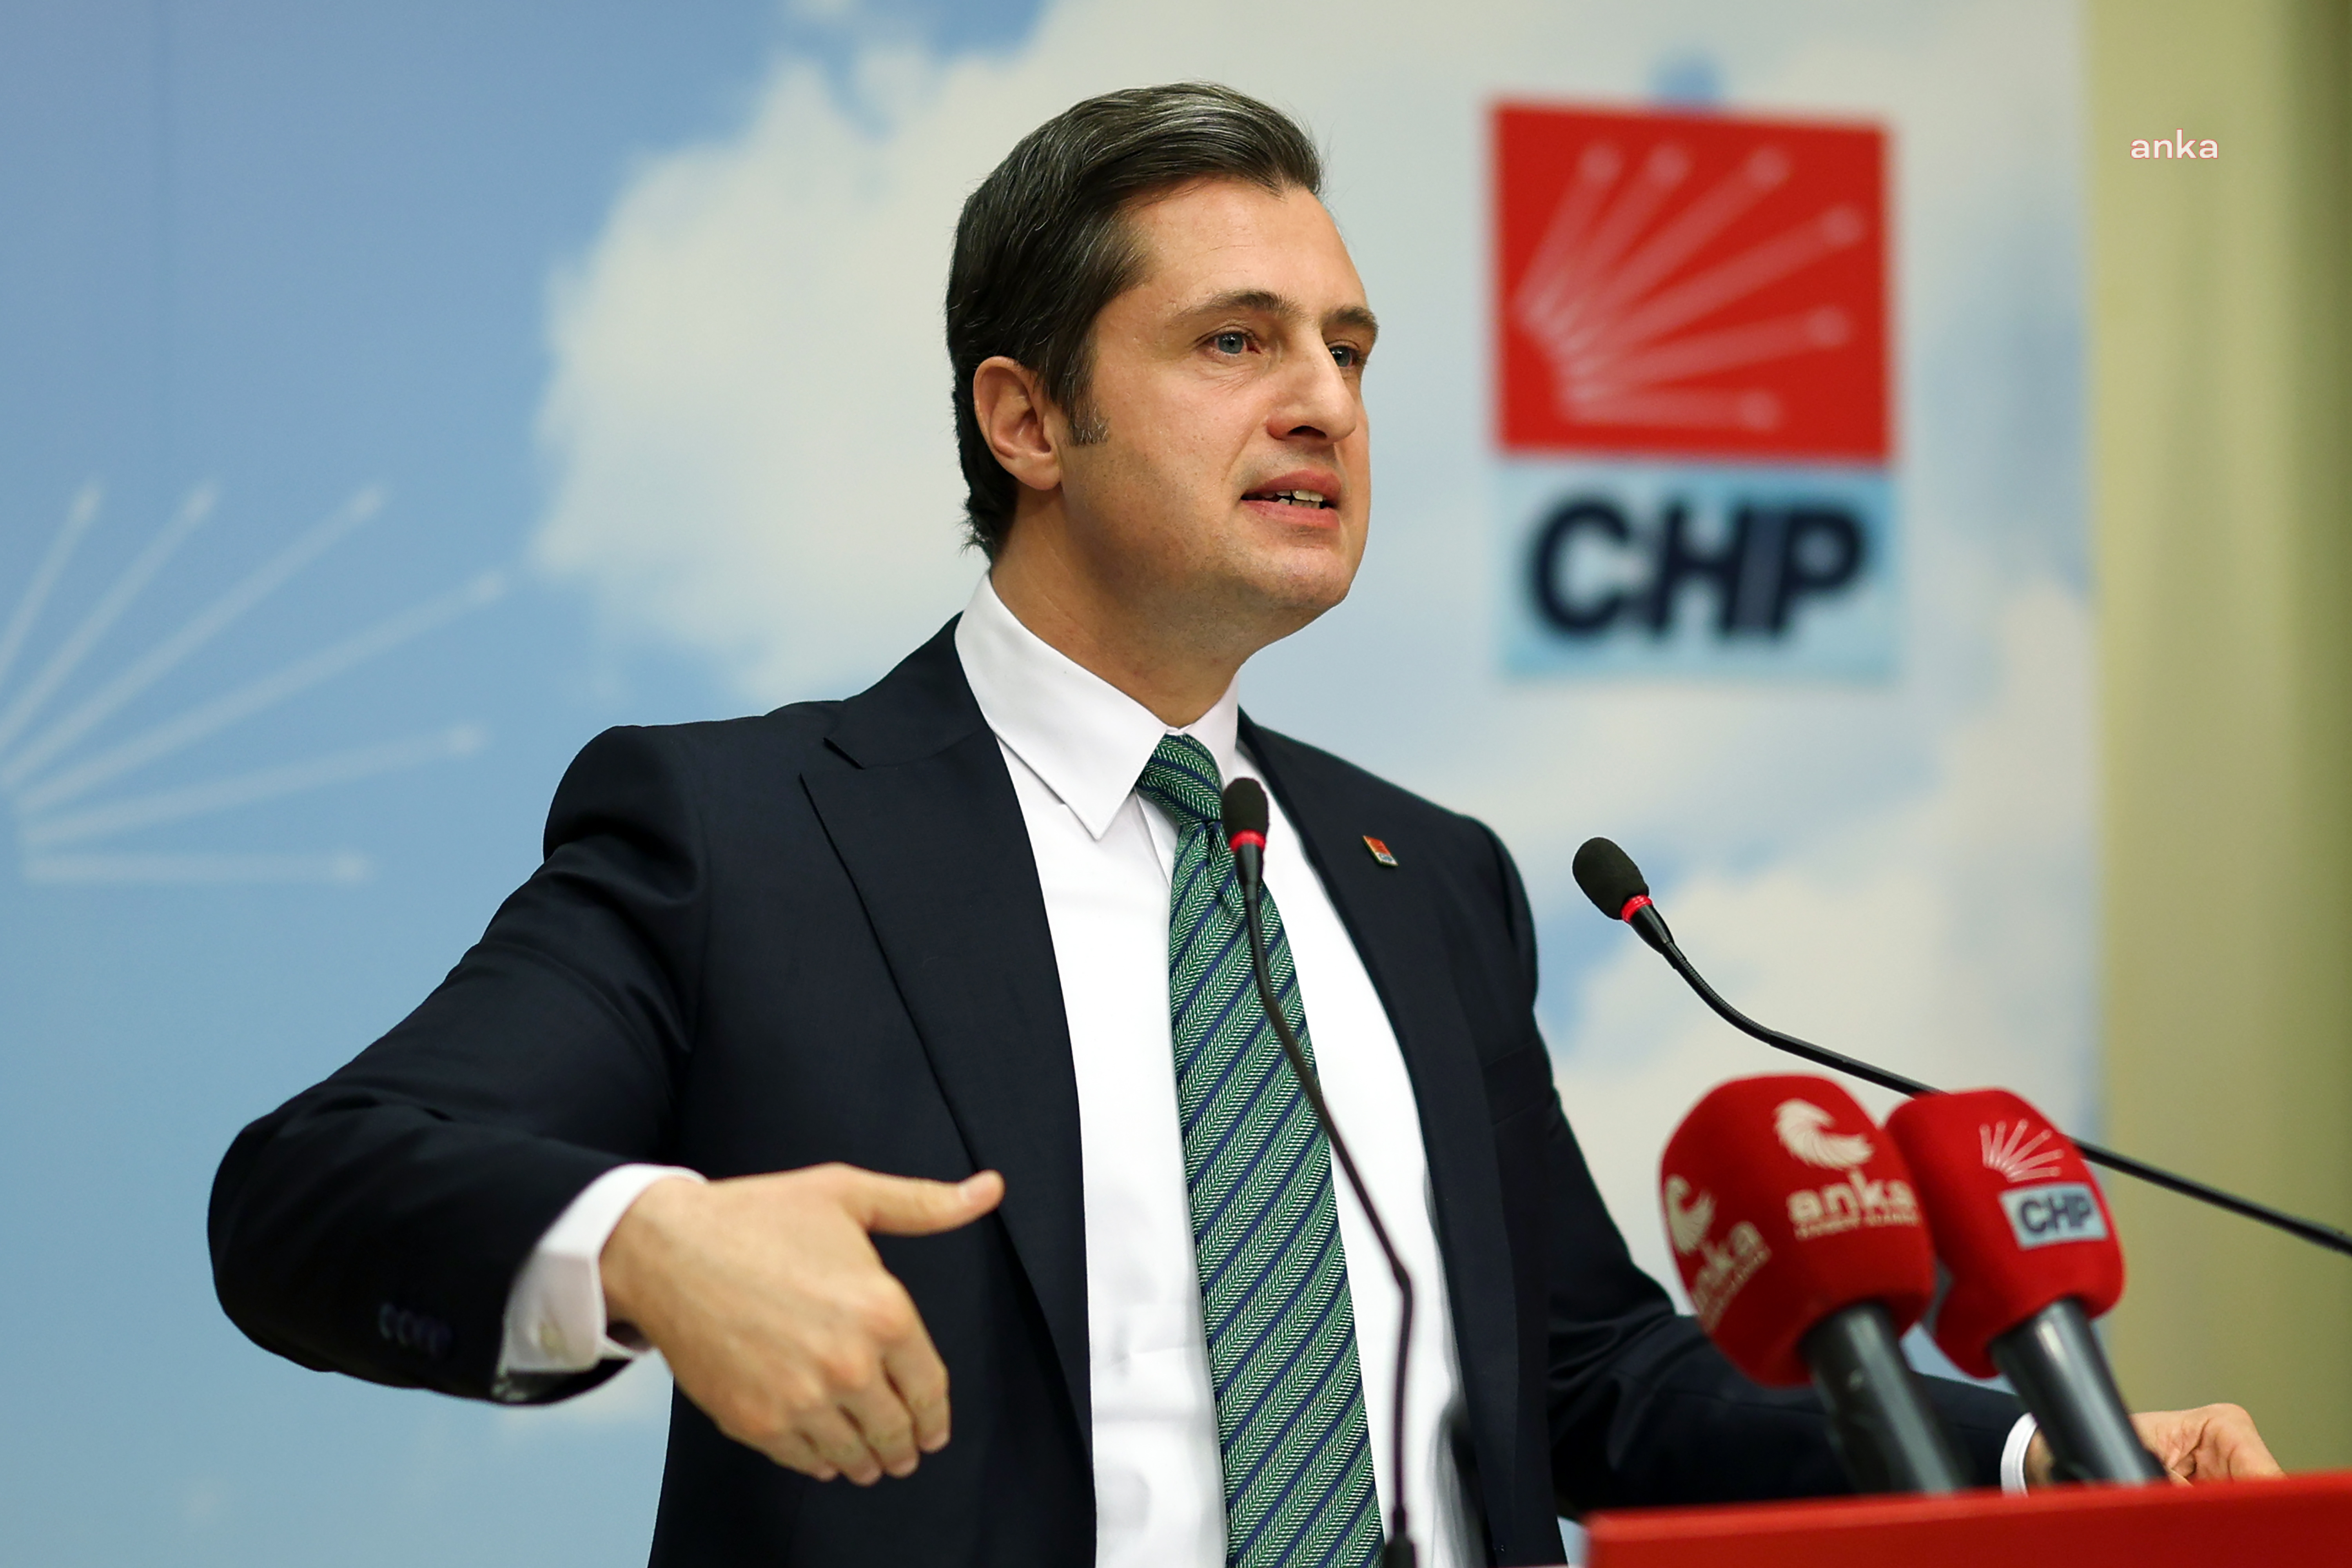 CHP Sözcüsü’nden, “etki ajanlığı” düzenlemesine tepki: Yasallaşması AKP’nin yepyeni bir otoriteleşme dönemini başlatması demek